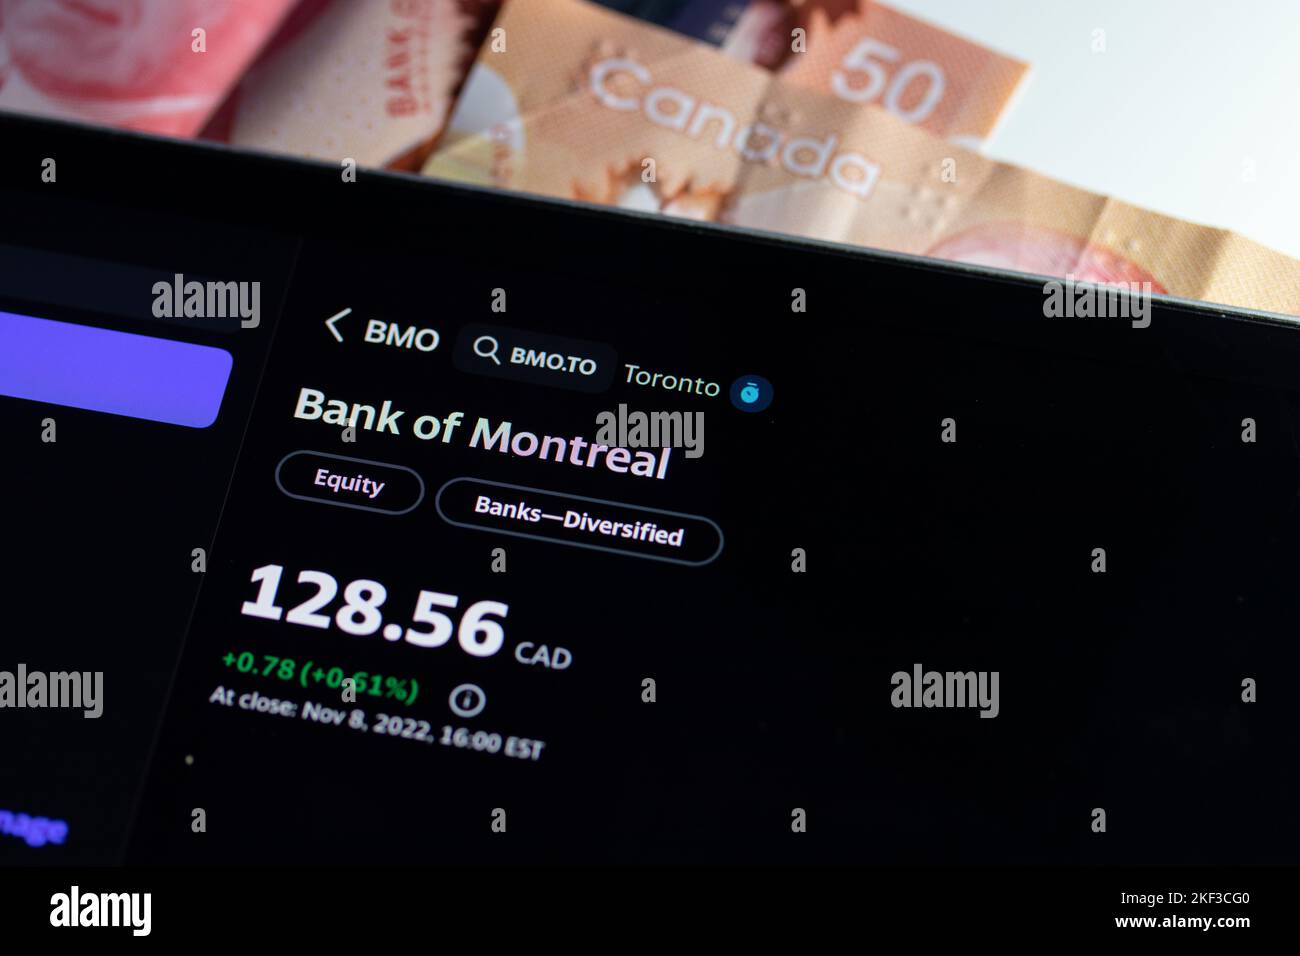 El Banco de Montreal (BMO), BMO en la Bolsa de Valores de Toronto (TSE) se ve en una pantalla, viendo el precio de las acciones para el banco canadiense. Foto de stock